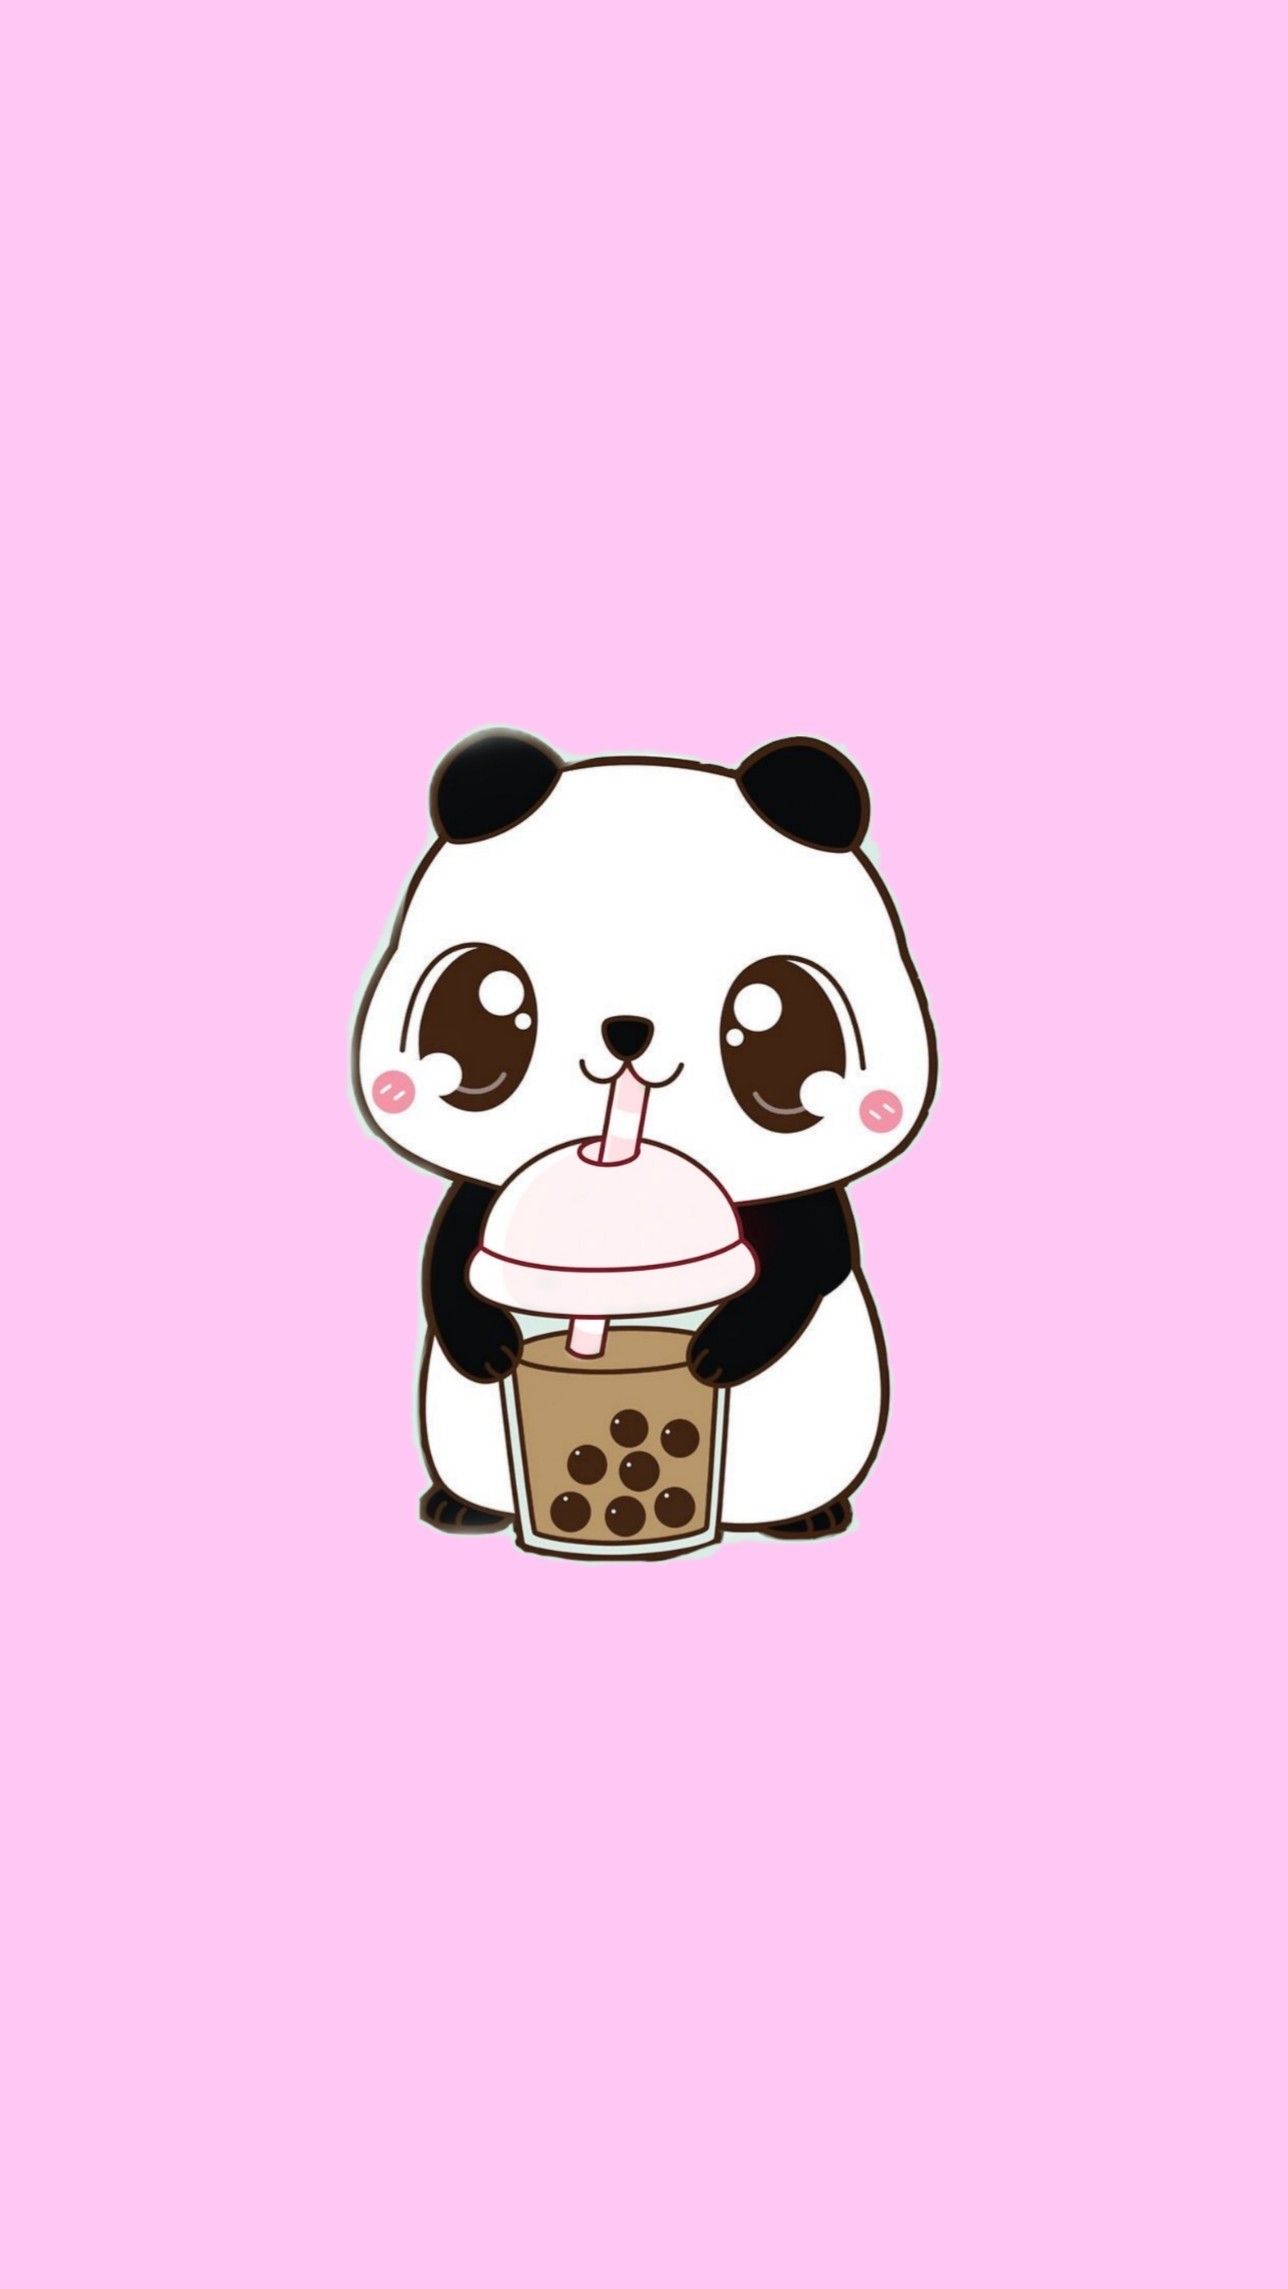 Cute panda iphone wallpaperð cute panda wallpaper cute panda pink unicorn wallpaper